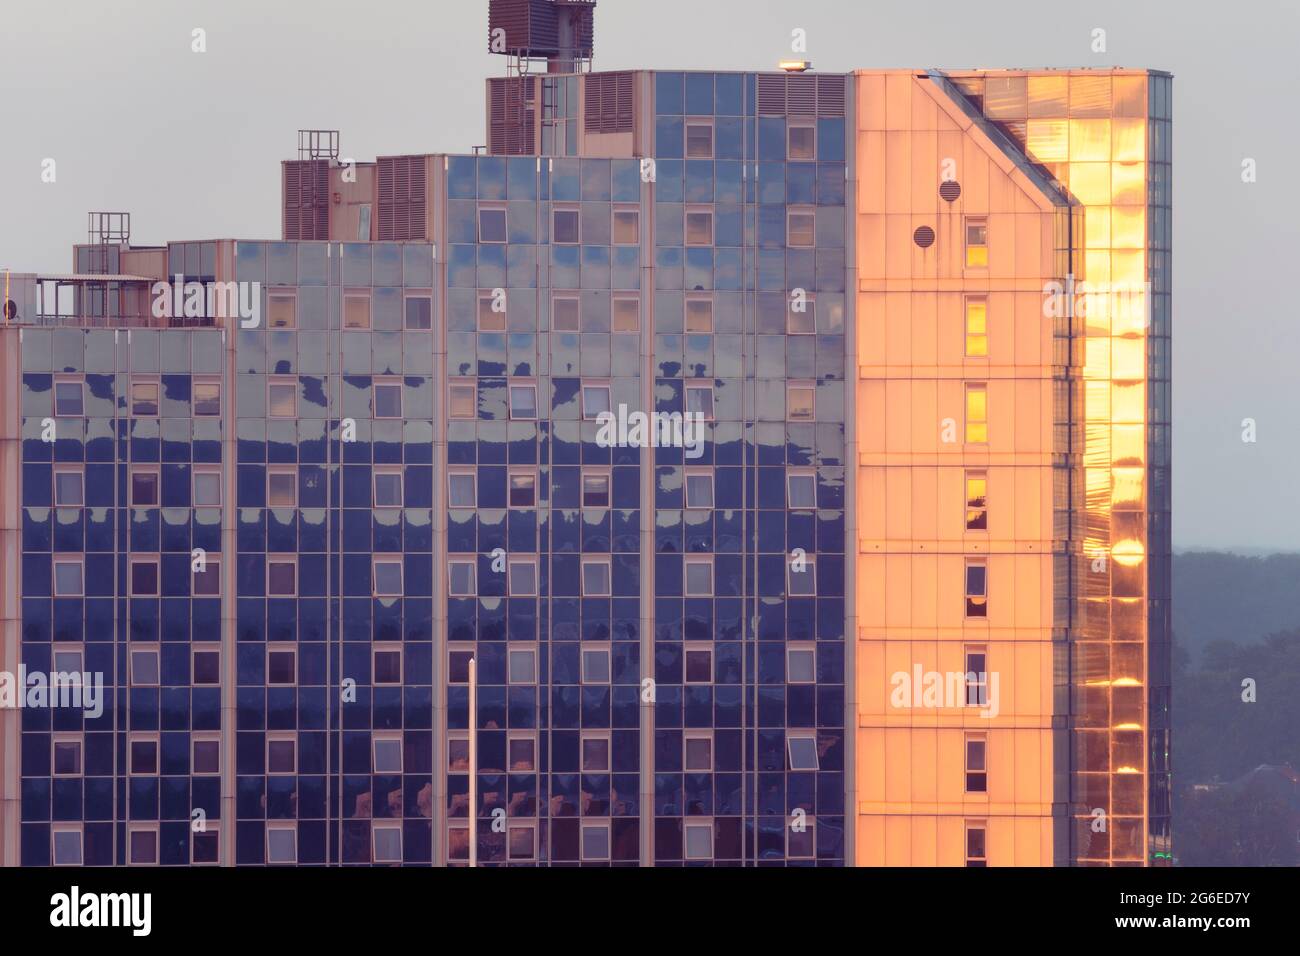 Le soleil couchant fait tourner les fenêtres de Churchill place, un immeuble d'appartements en hauteur, orange foncé à la fin juin. Basingstoke, Royaume-Uni Banque D'Images